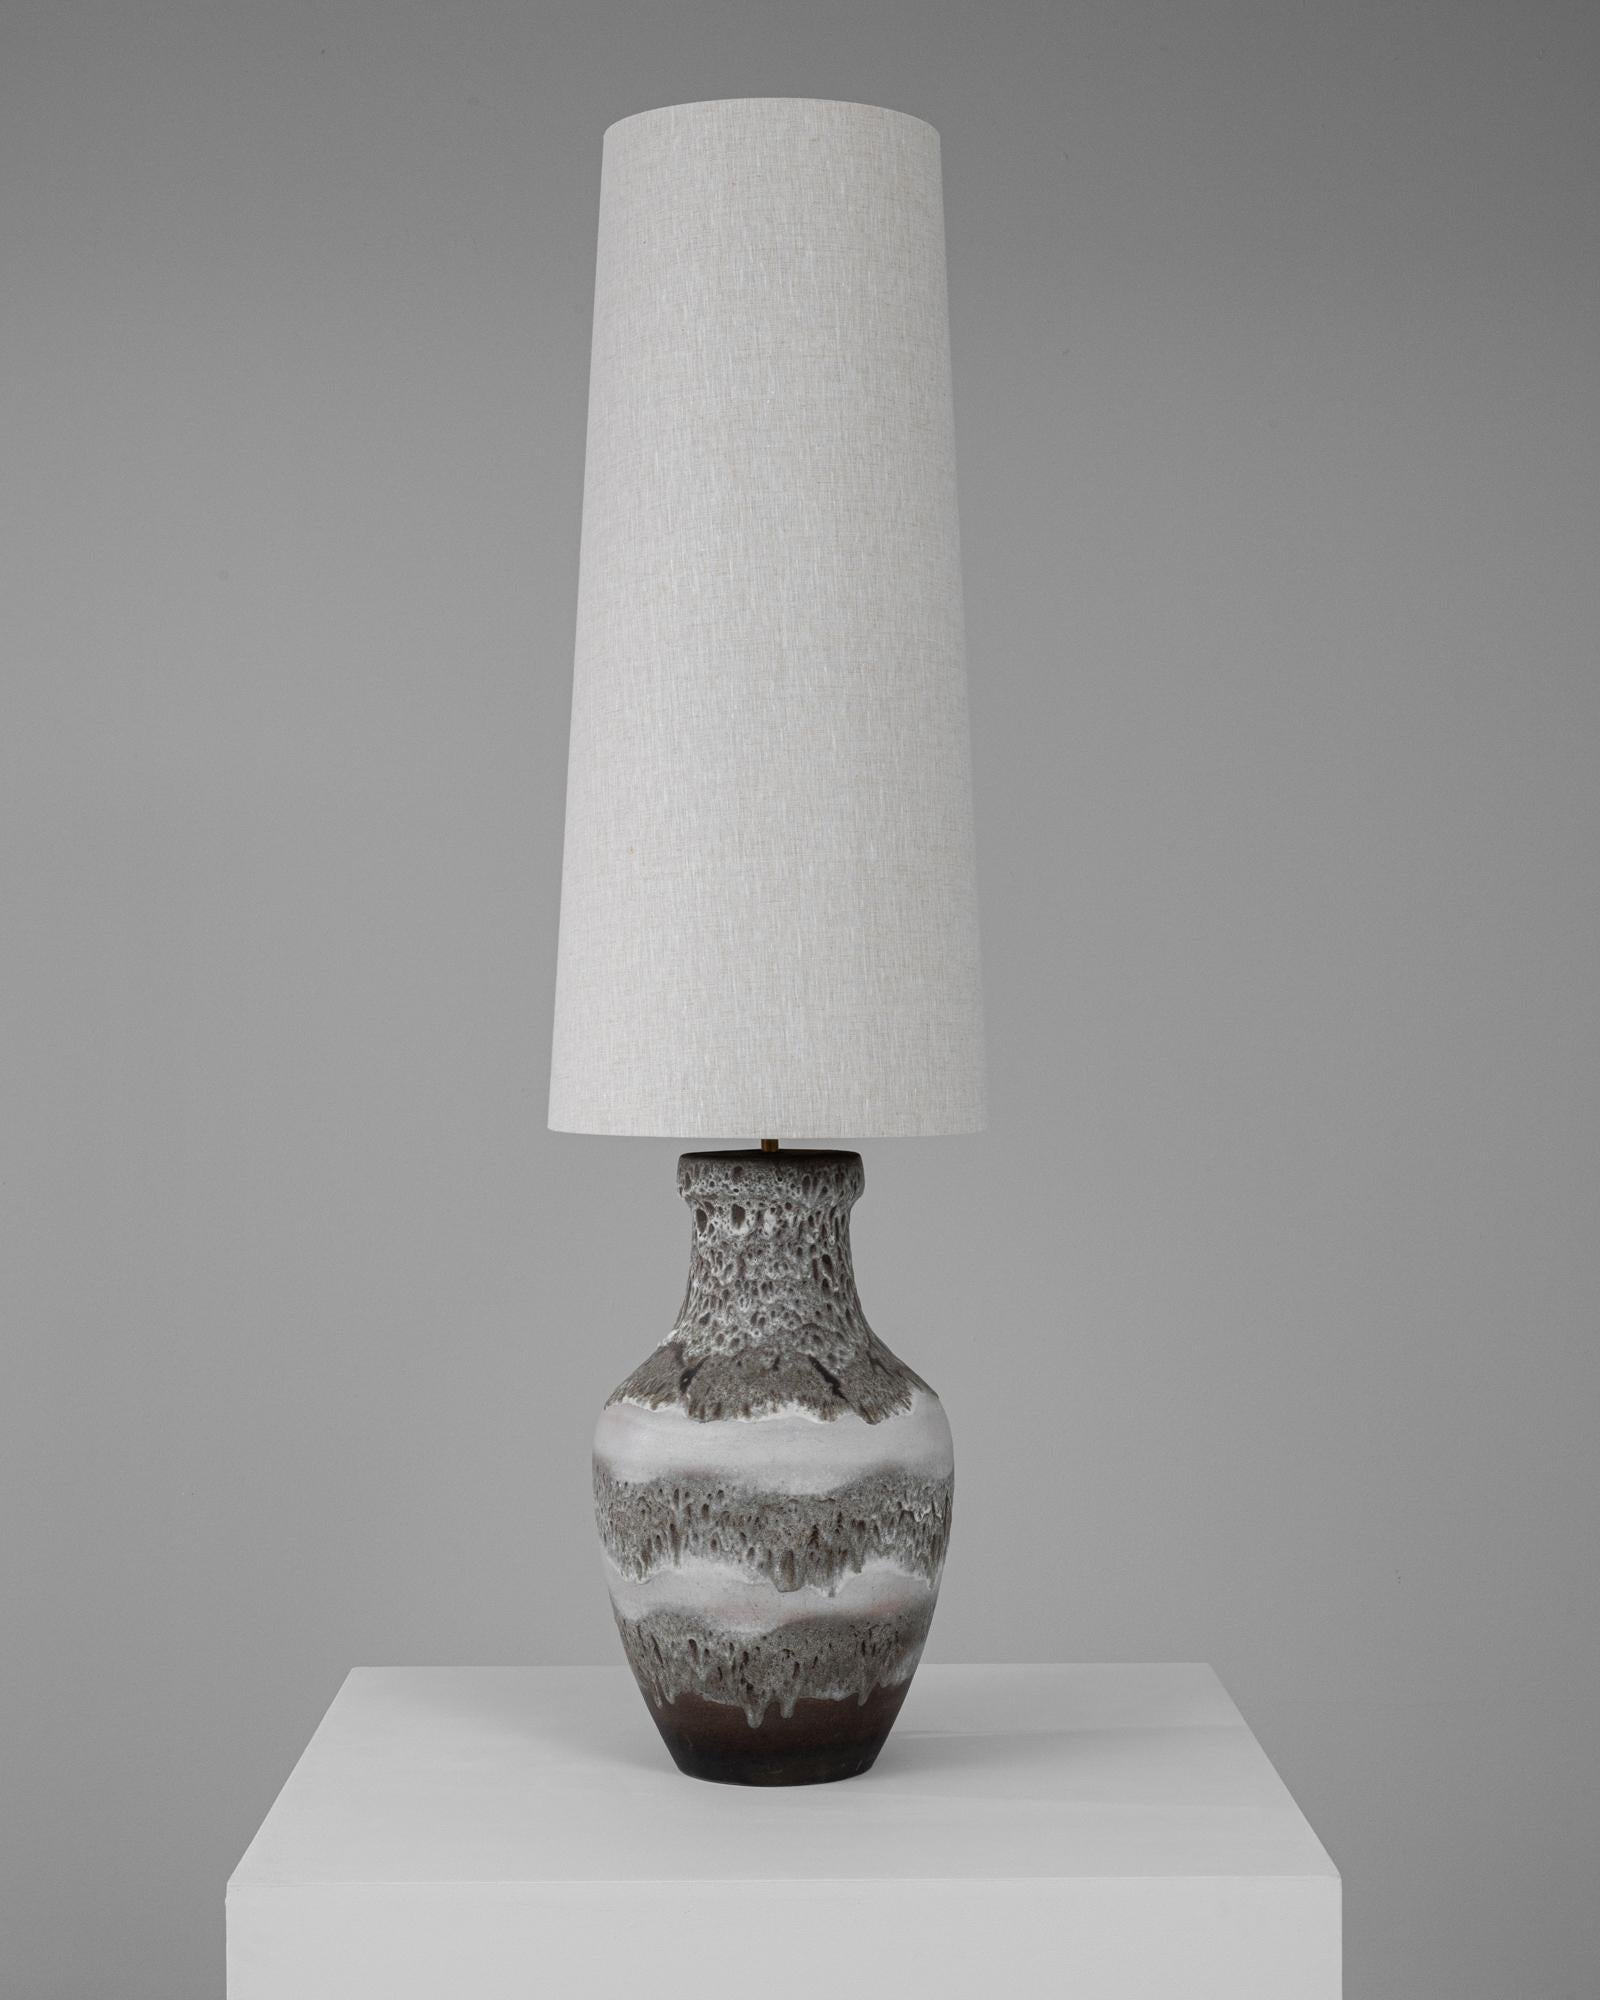 Cette lampe de table en céramique allemande du 20e siècle est un exemple exceptionnel de sophistication vintage mêlée à une fonctionnalité moderne. La base de la lampe est magnifiquement fabriquée en céramique avec une finition texturée qui présente